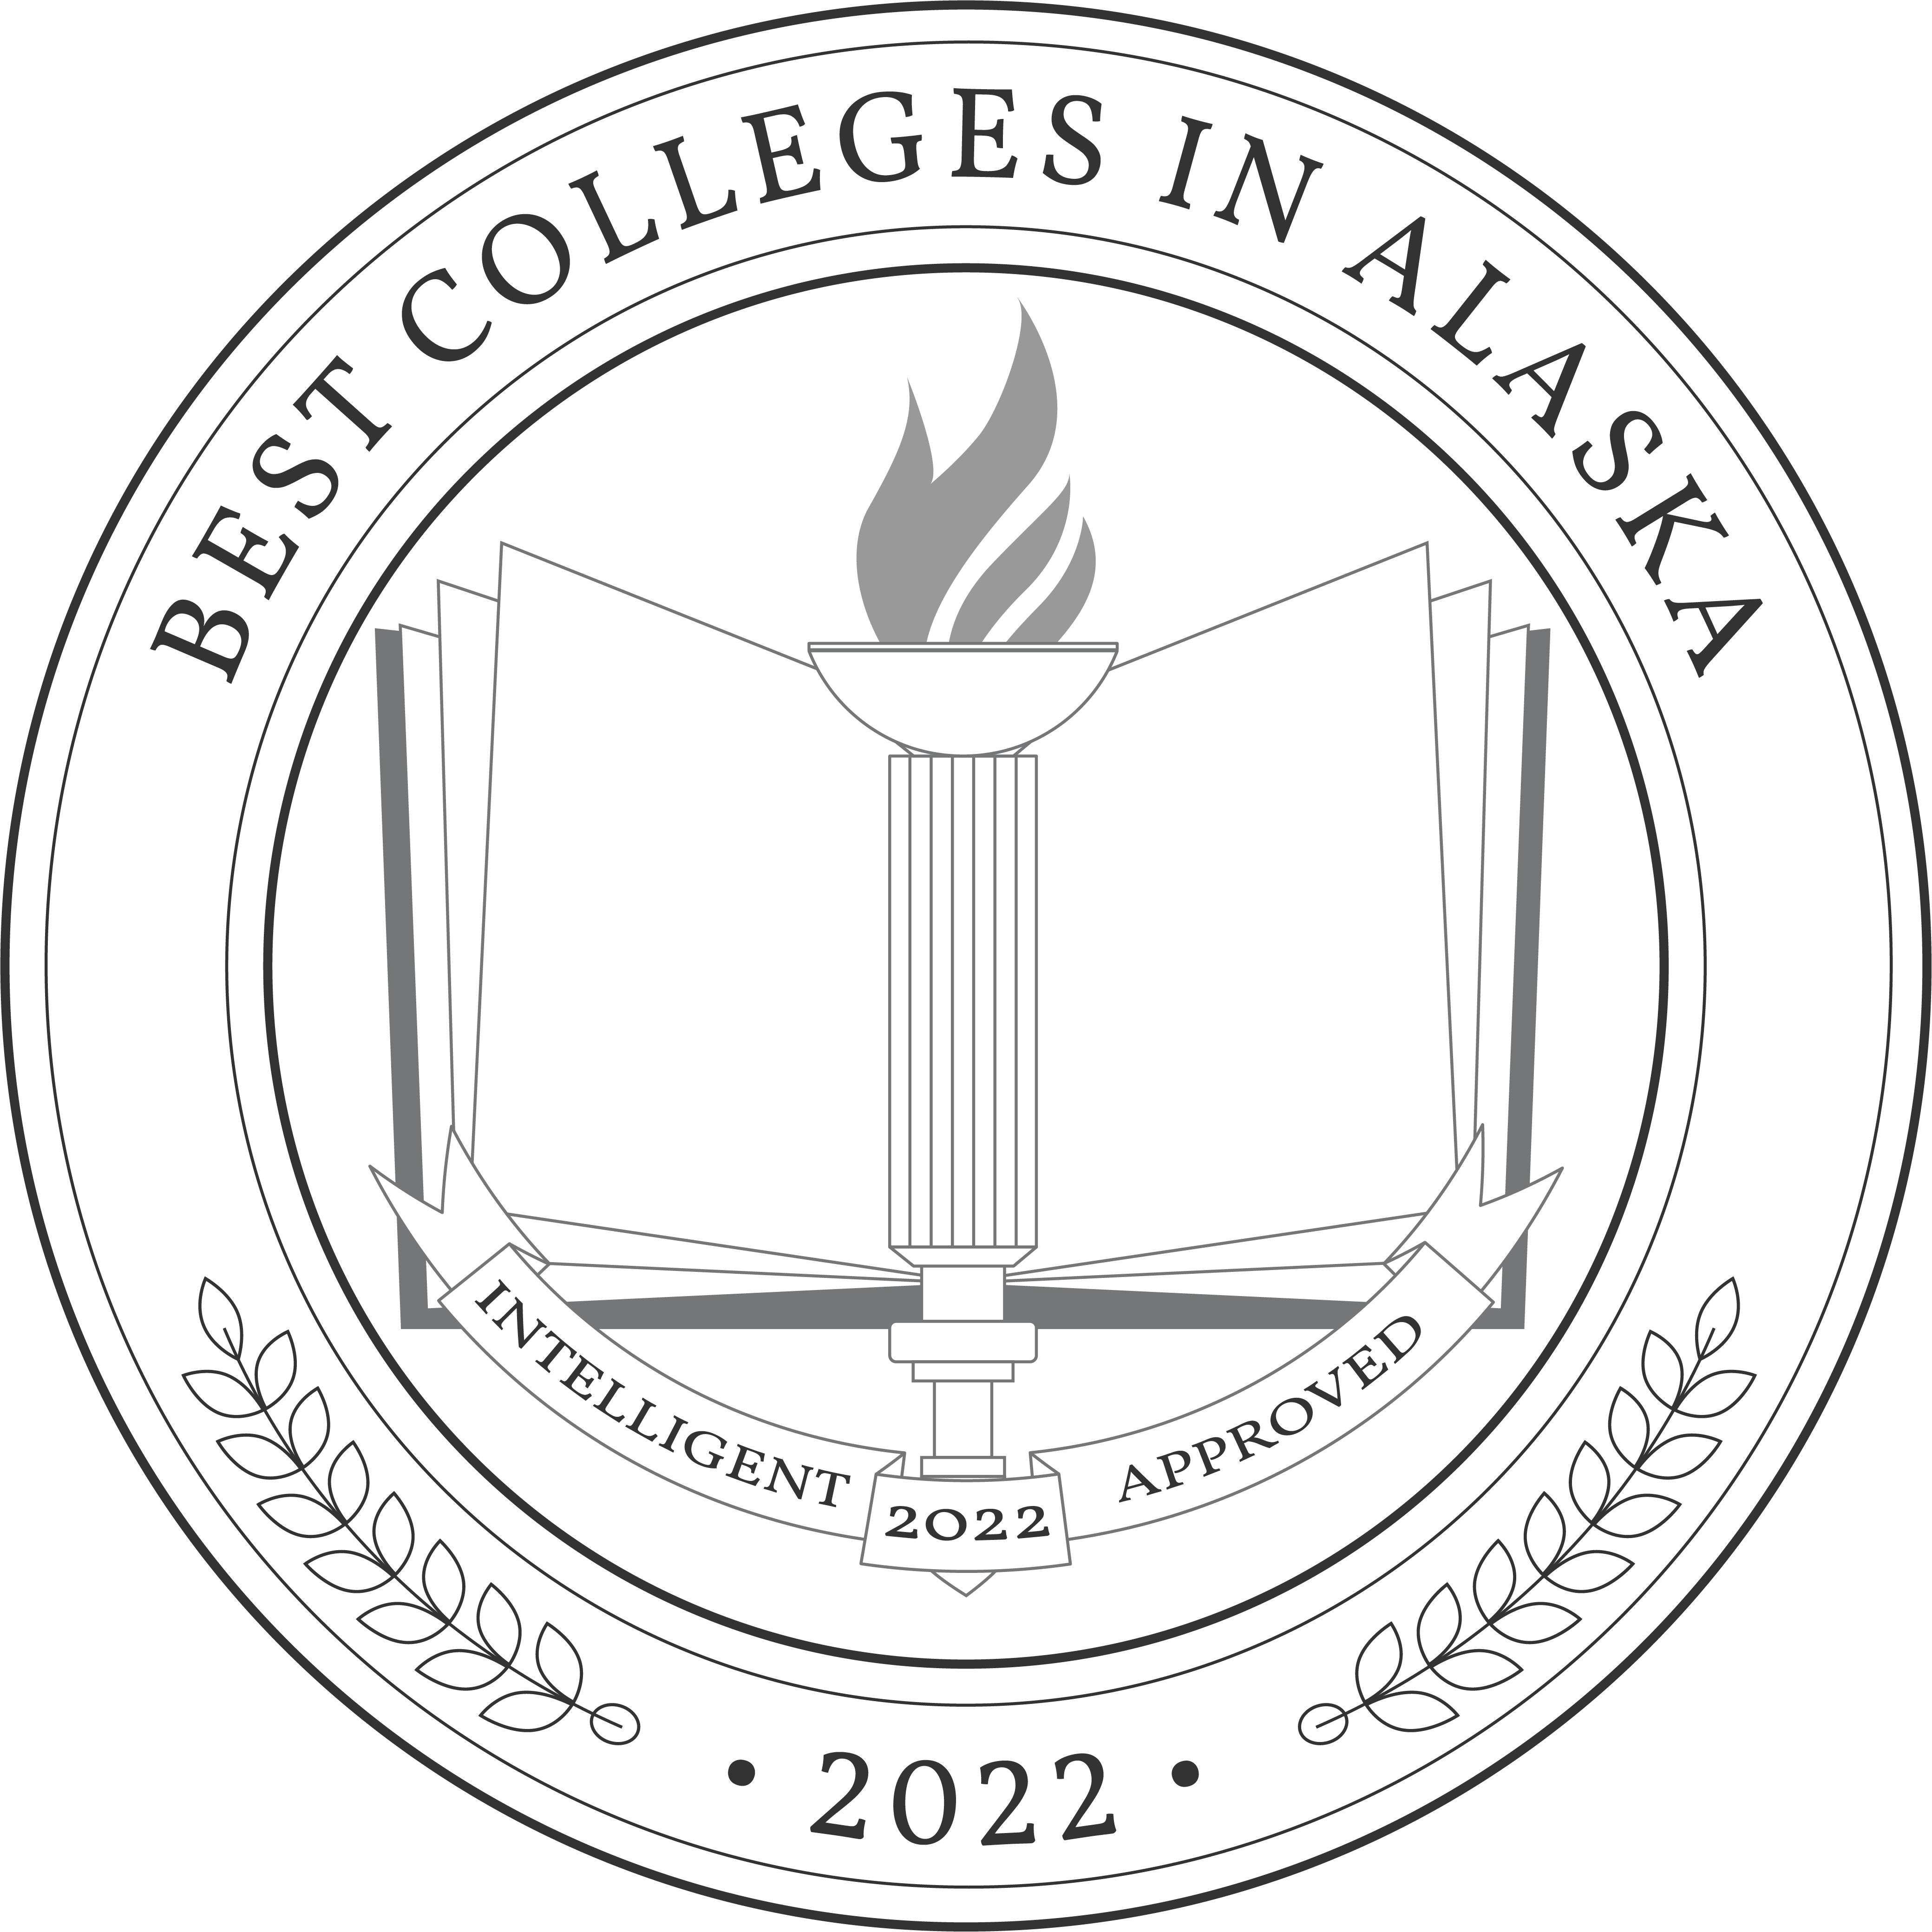 Best Colleges In Alaska